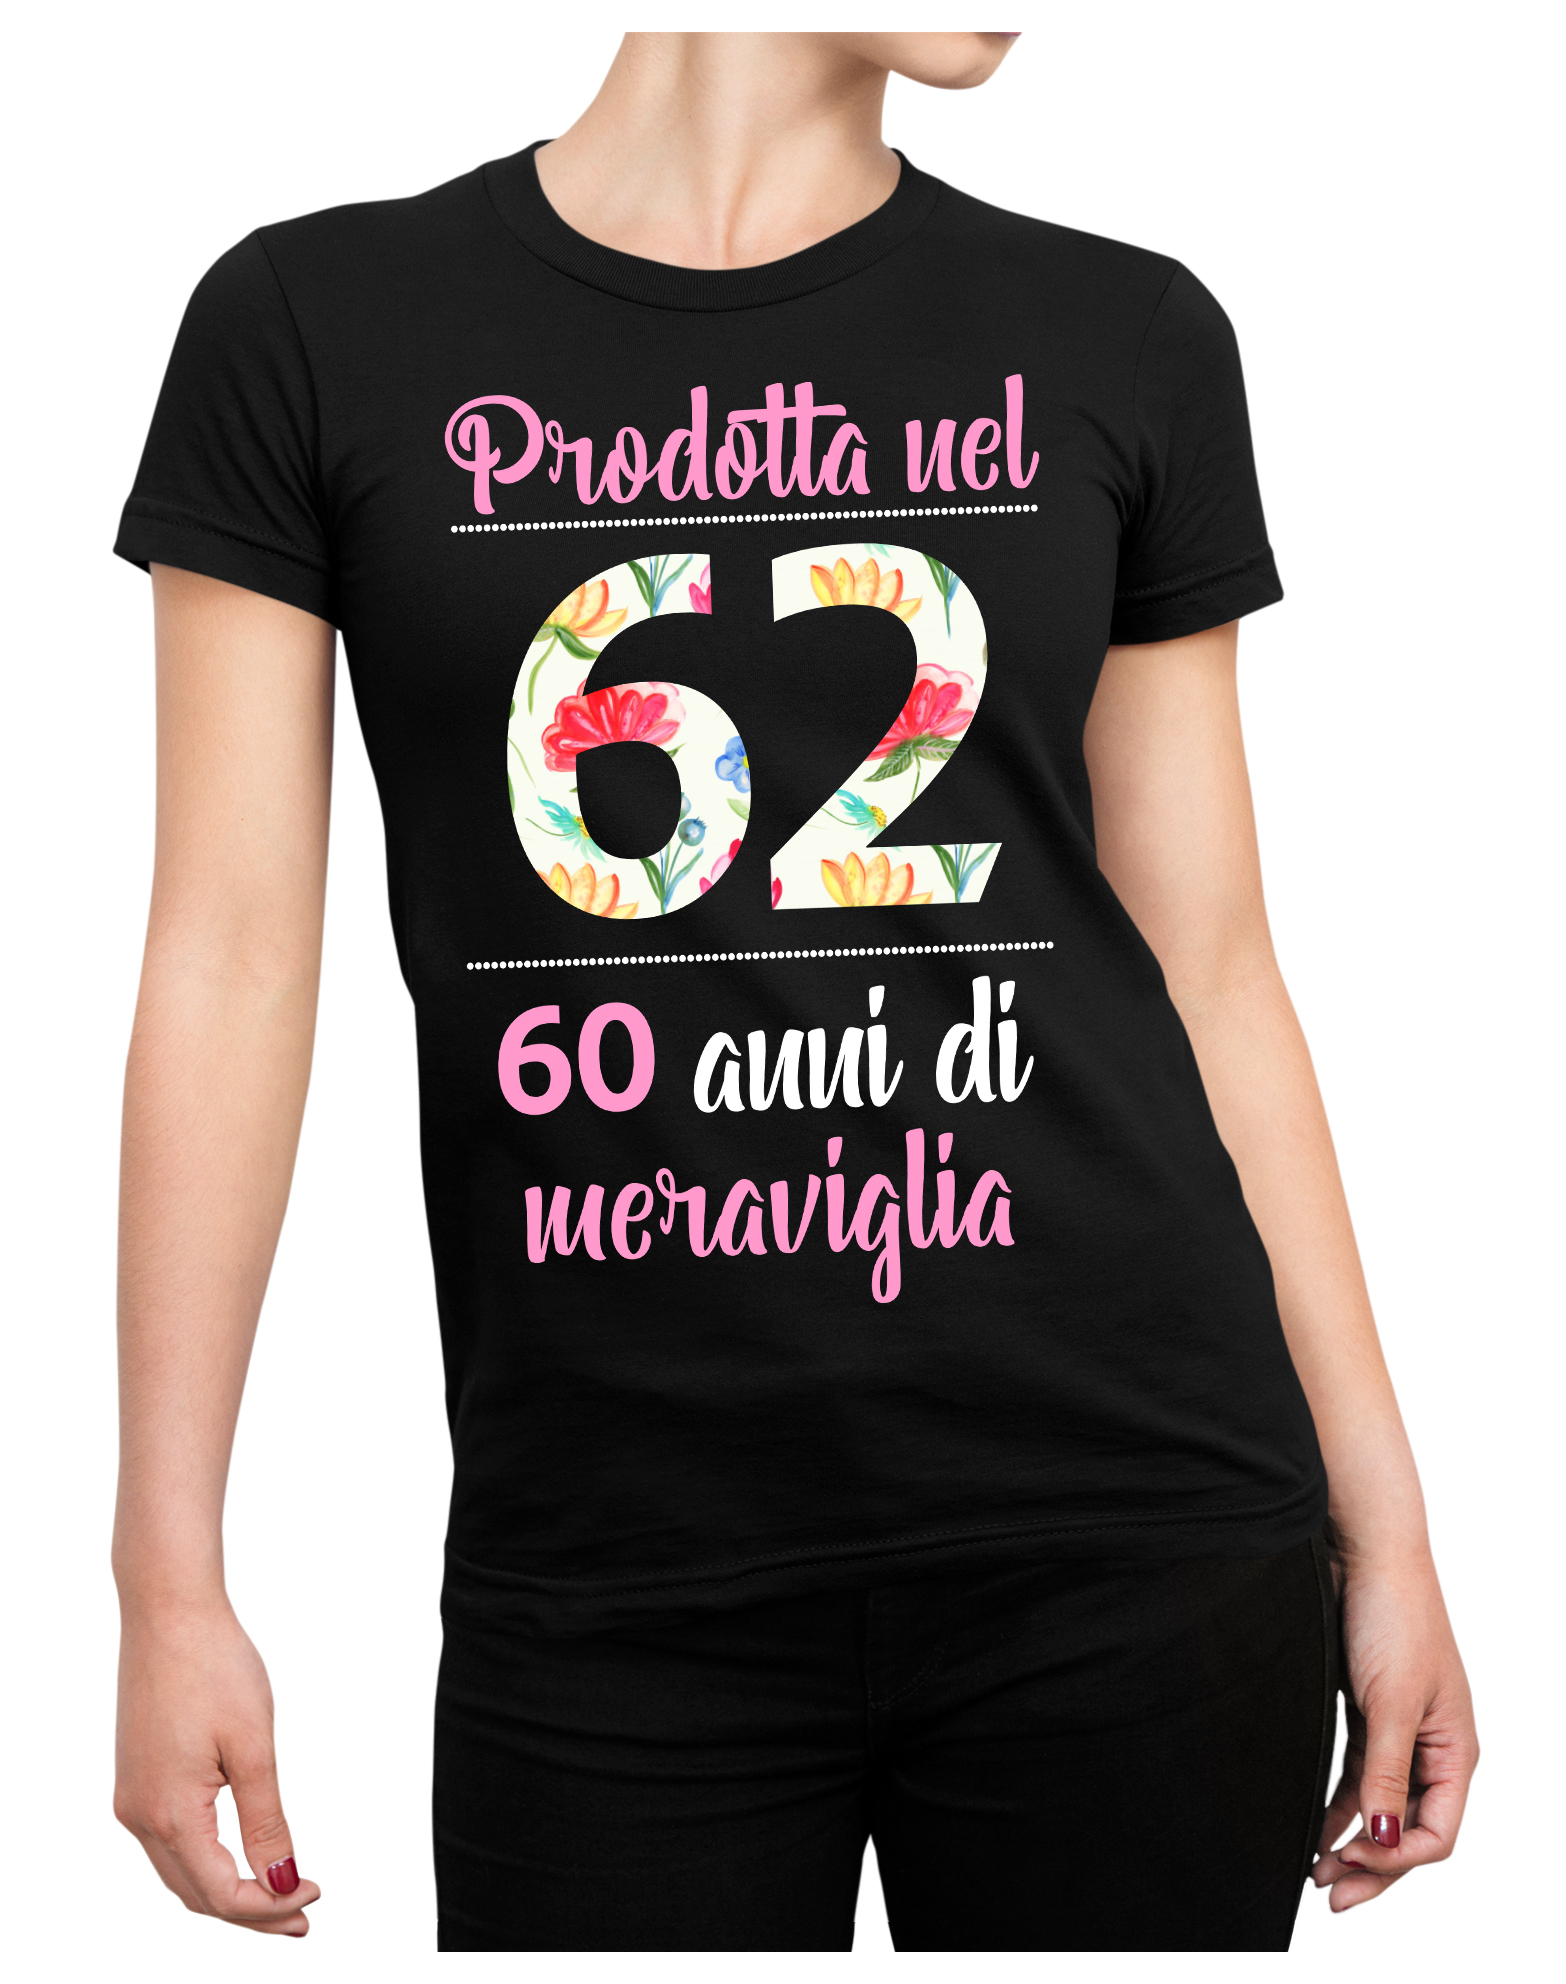 Maglietta 60 anni Compleanno Donna Prodotta nel 1962, 60 anni di meraviglia  - auguri regalo donna divertente - ColorFamily